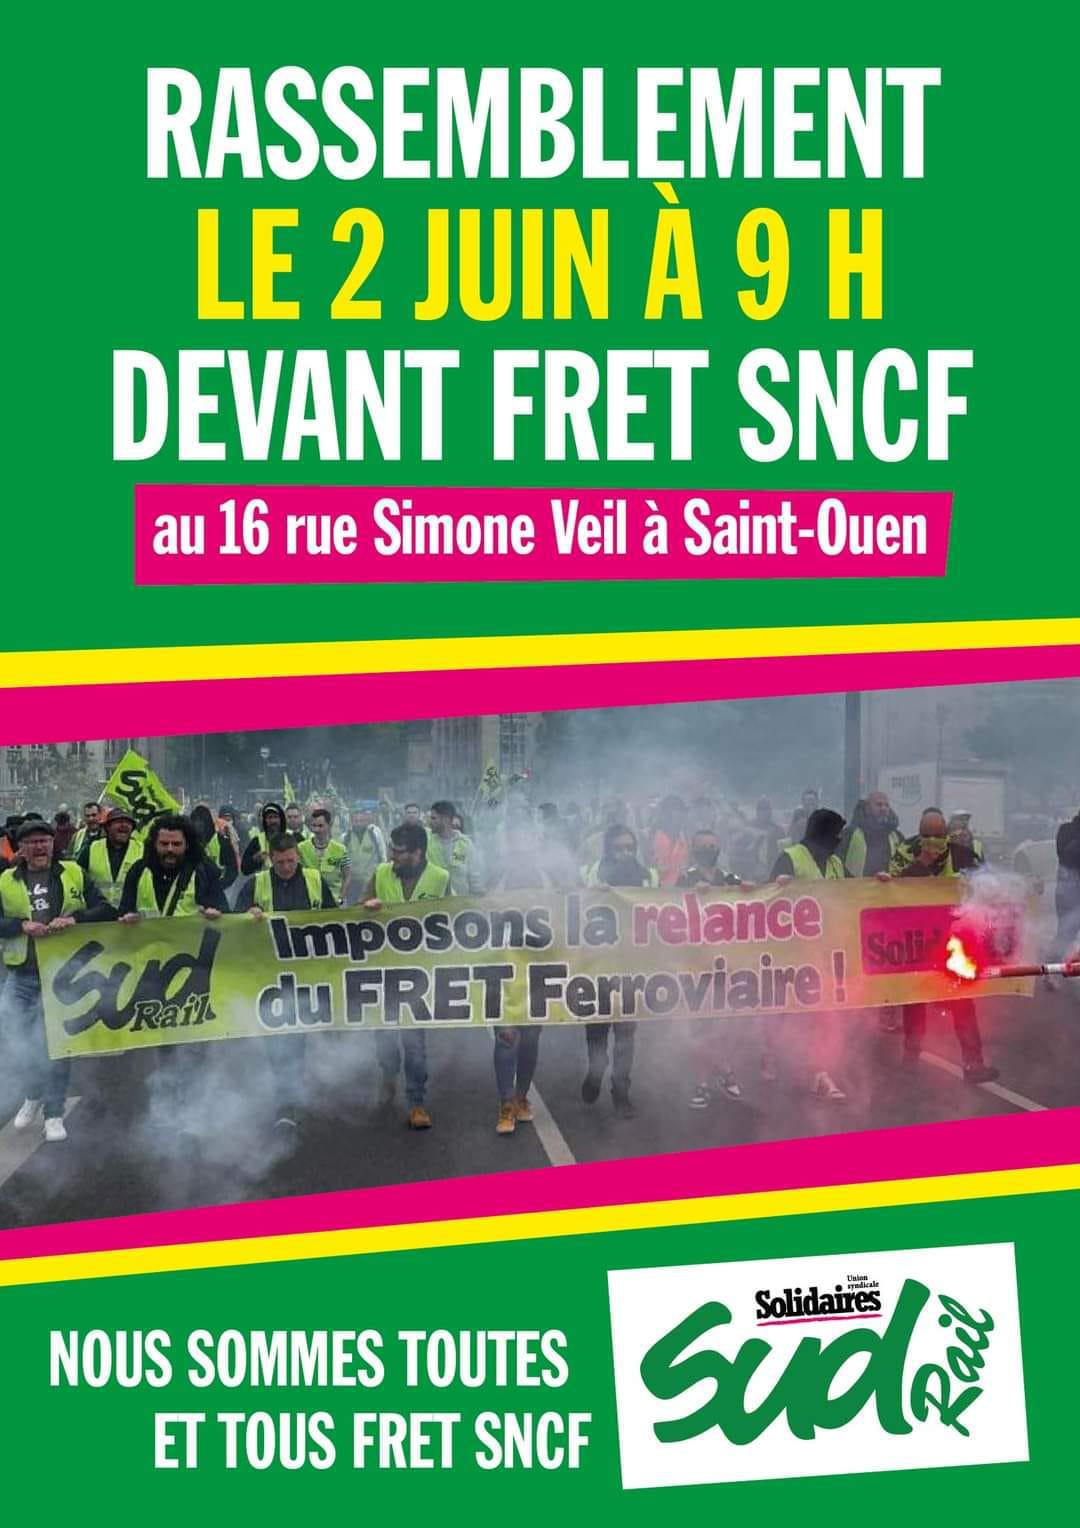 Liquidation de Fret SNCF : "Un coup de poignard dans le dos"